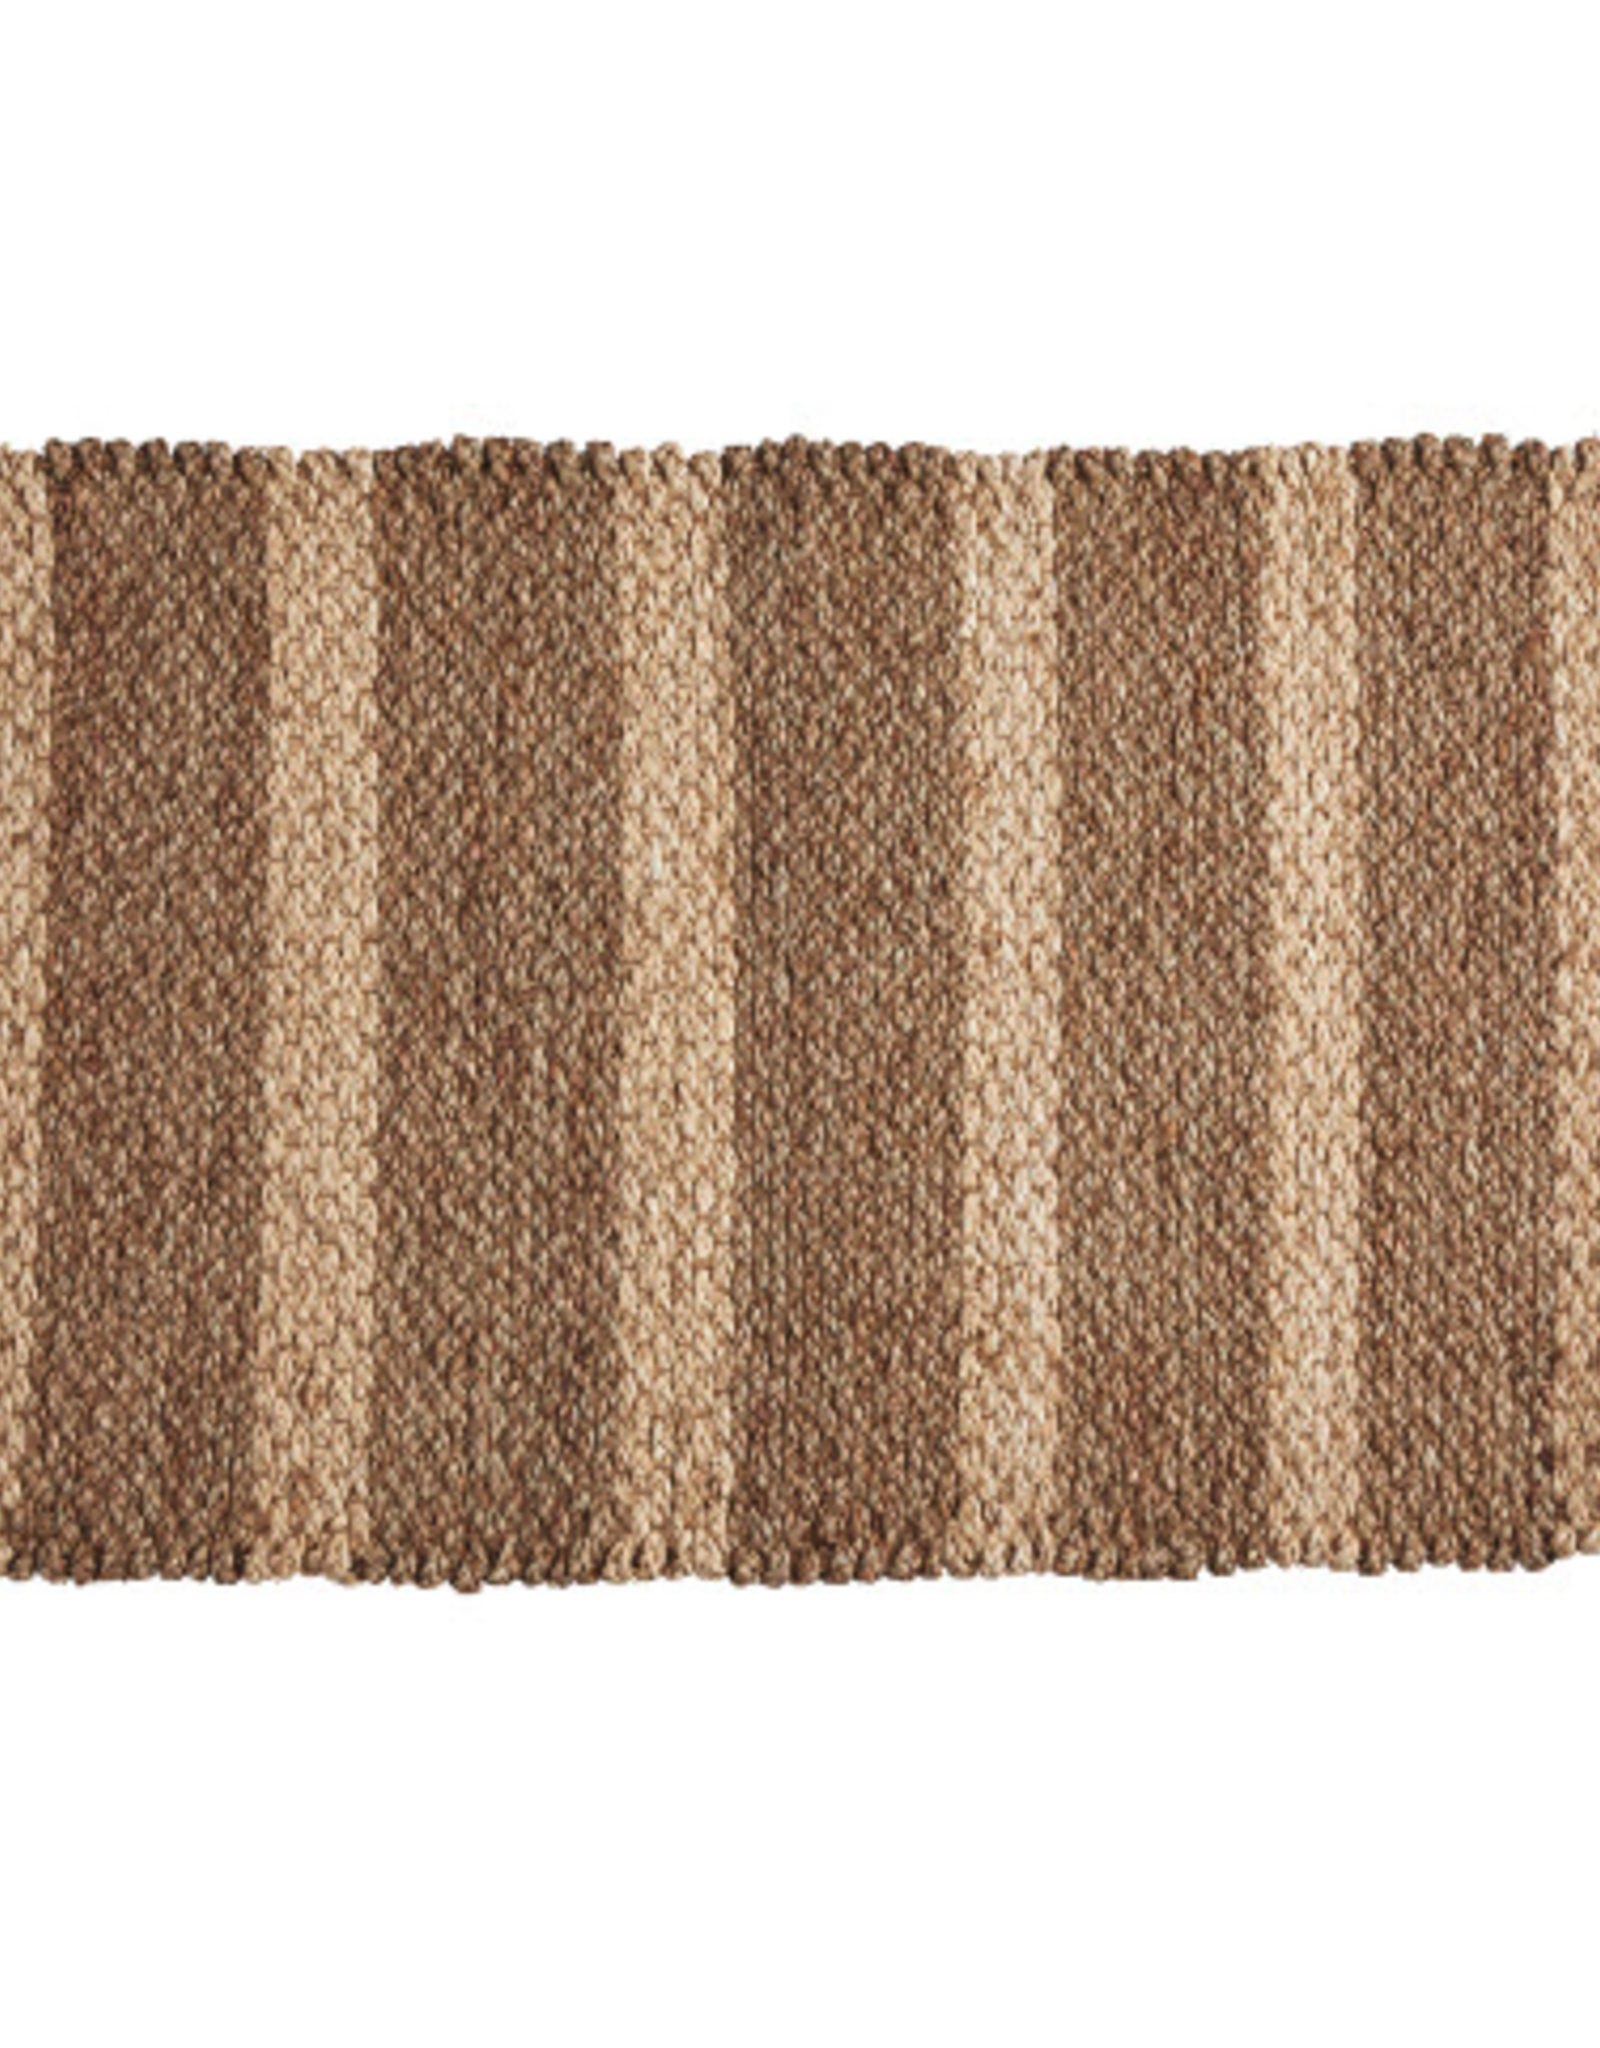 Del Mar Seagrass Doormat L35.5" W23.5"